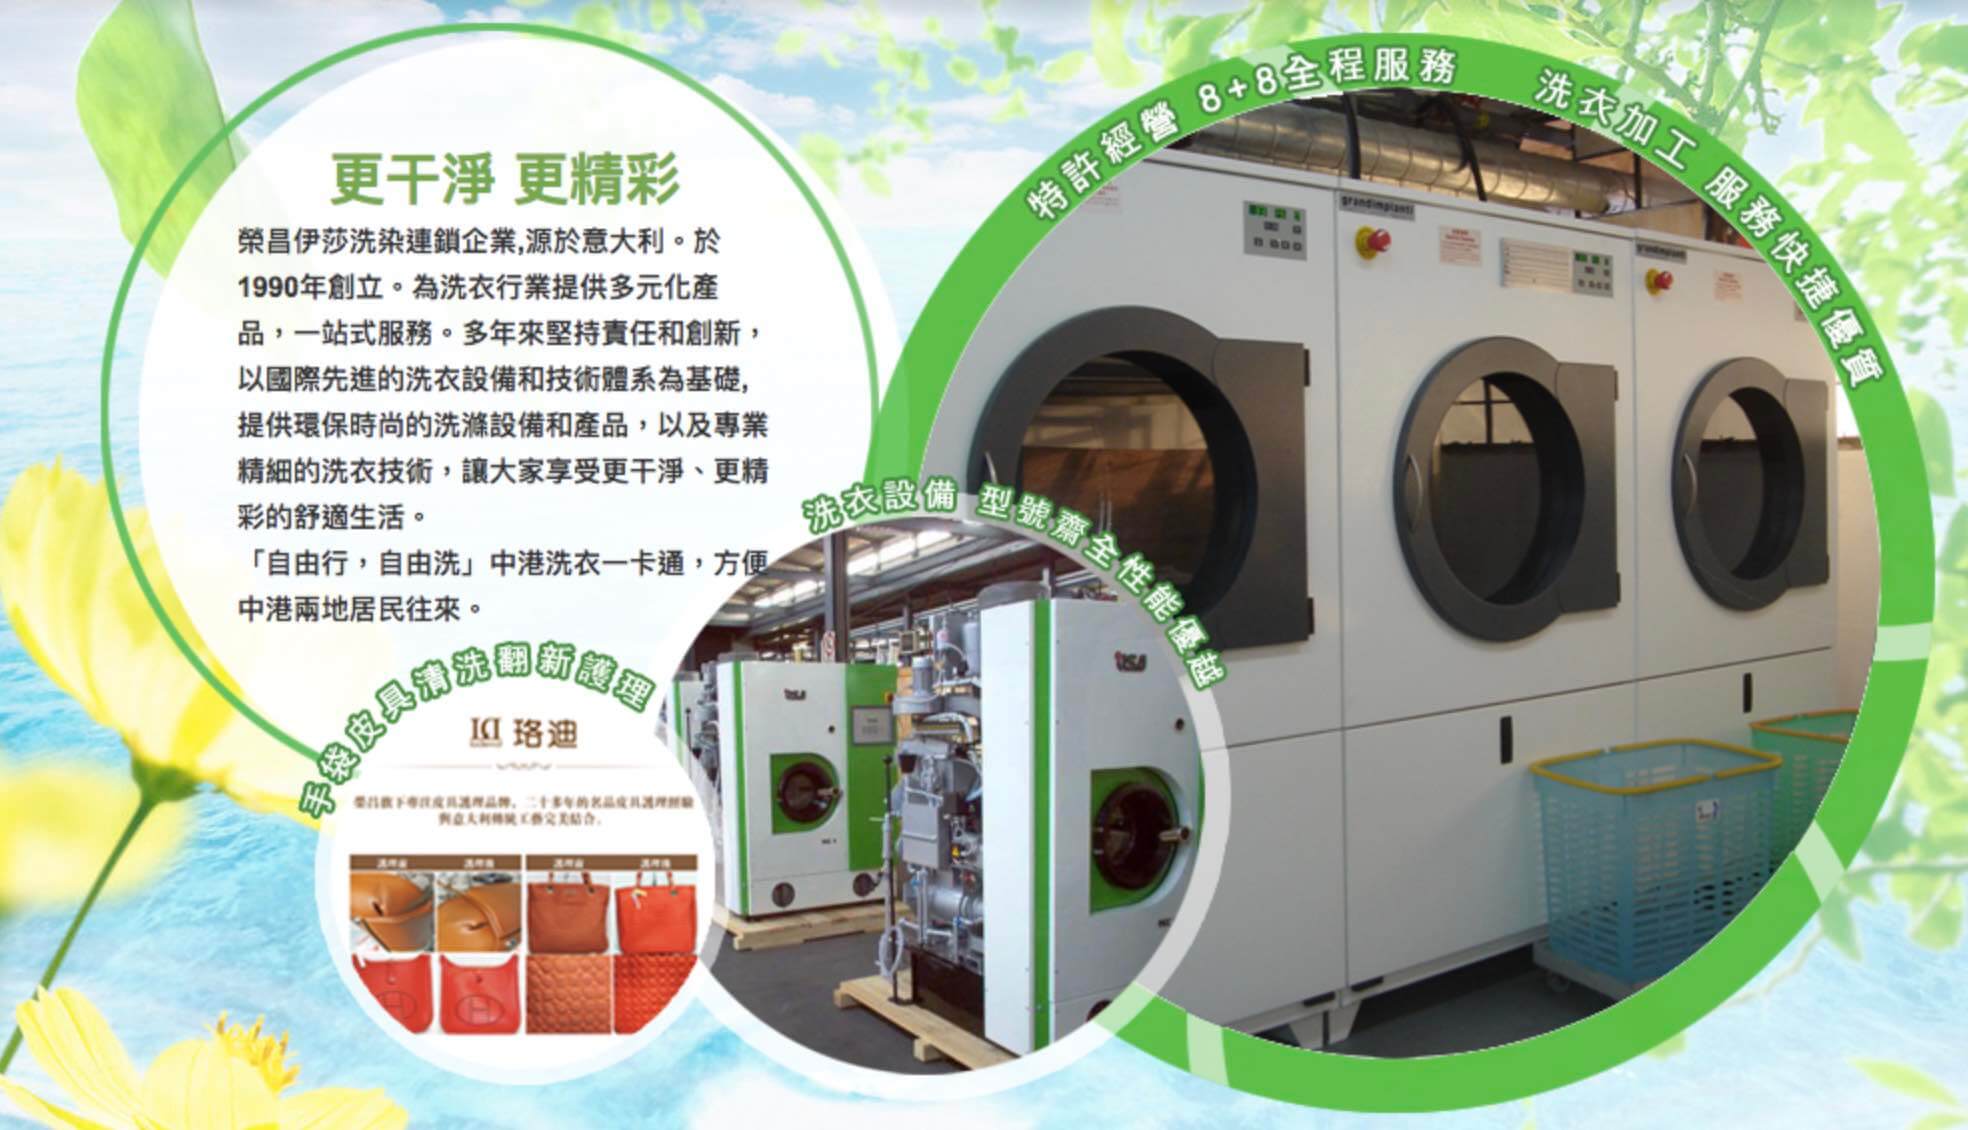 伊莎洗衣的特許經營香港區加盟店項目2